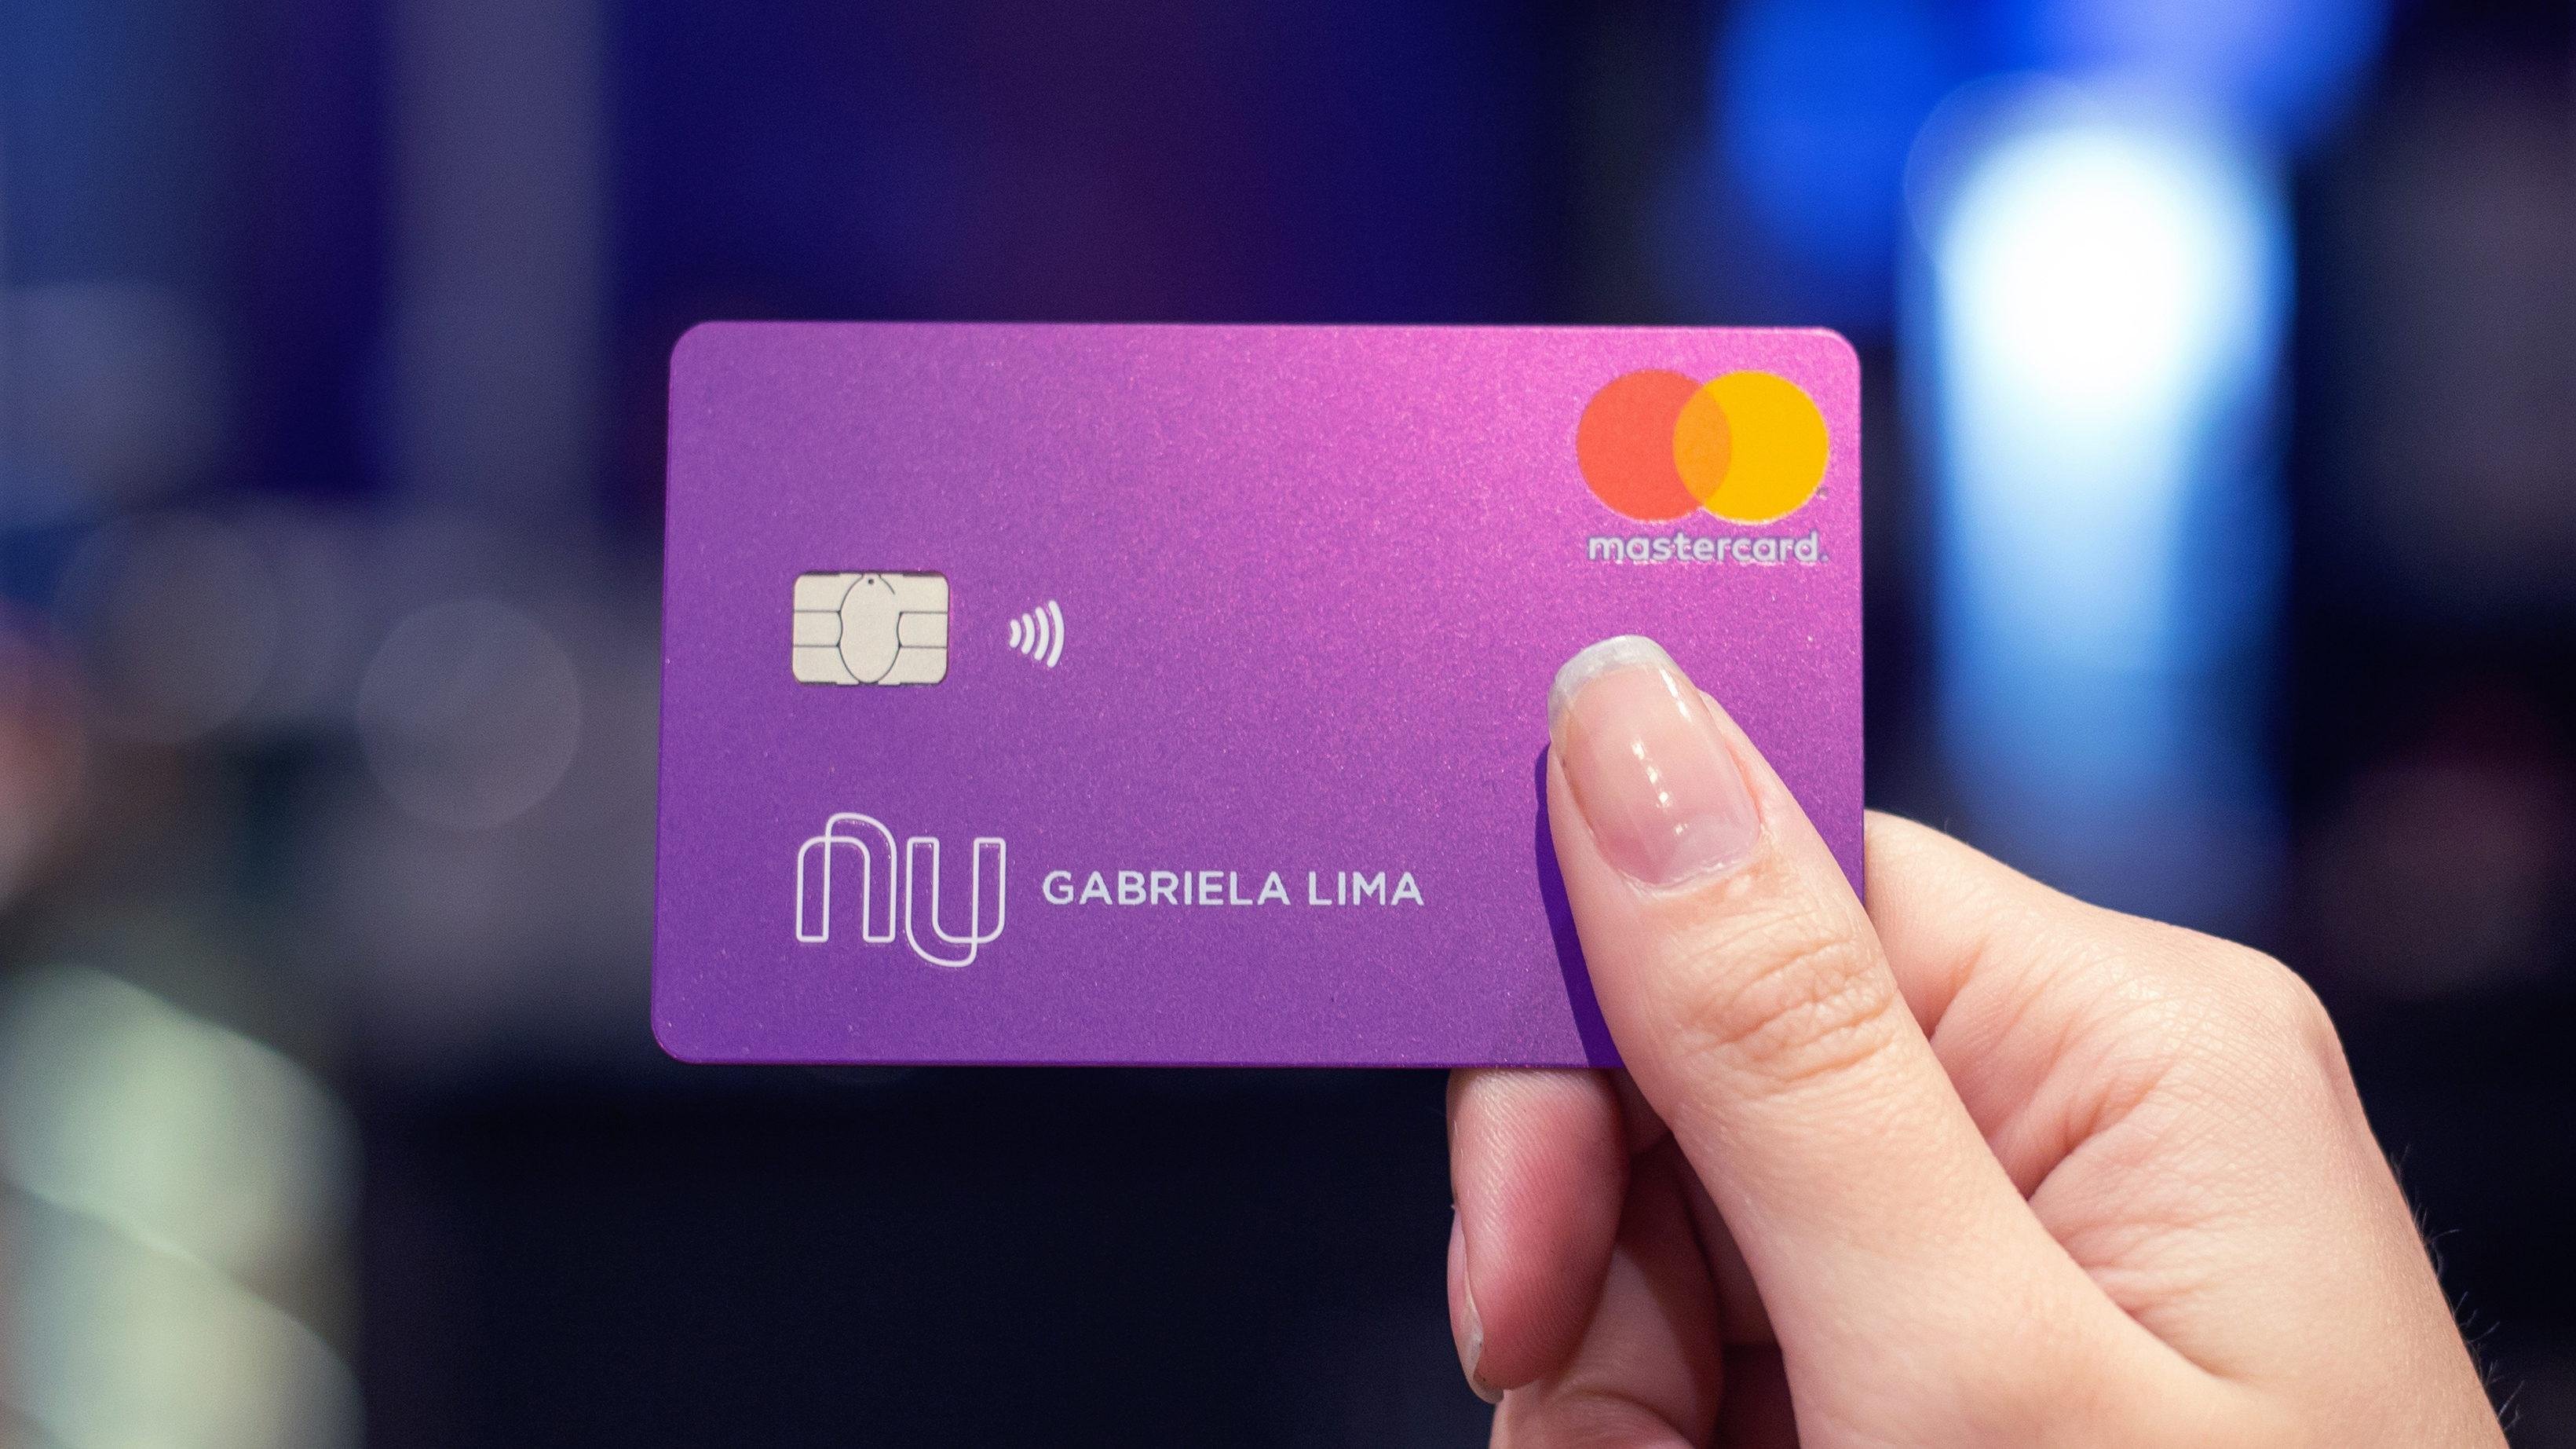 Nubank oferece duas formas para obter cashback: o Shopping Nubank e usando o cartão de crédito Ultravioleta.